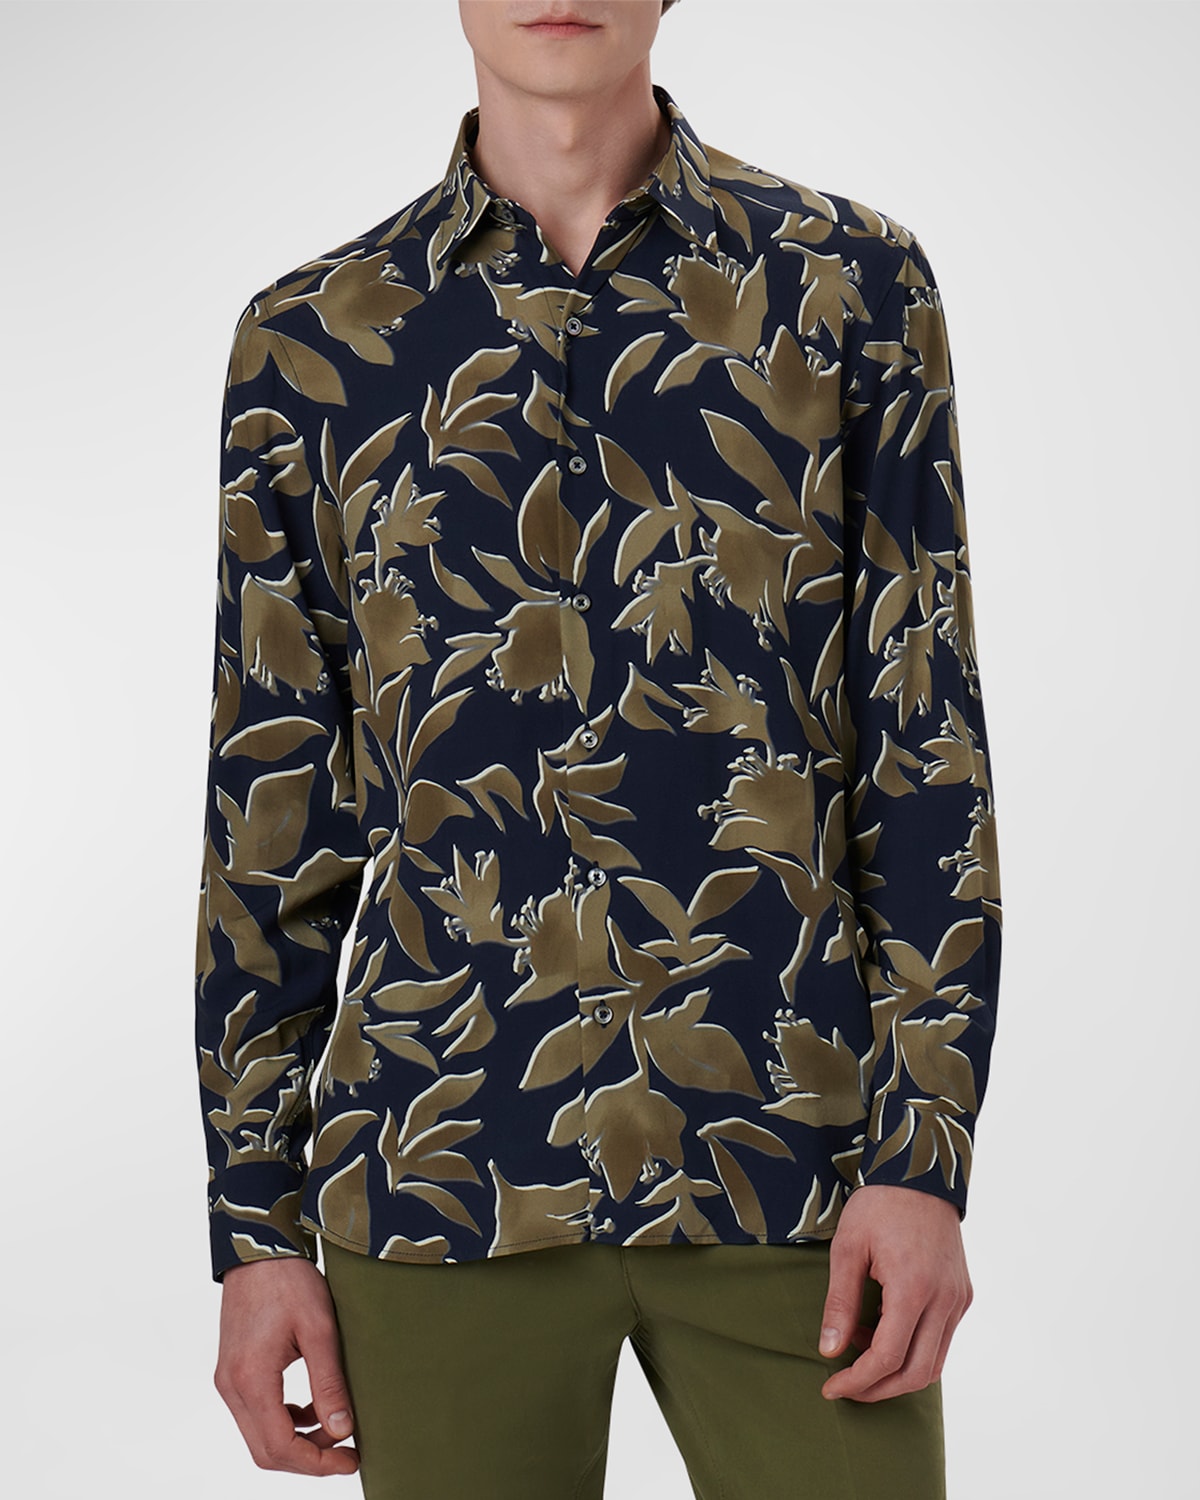 Men's EcoVero Floral Sport Shirt